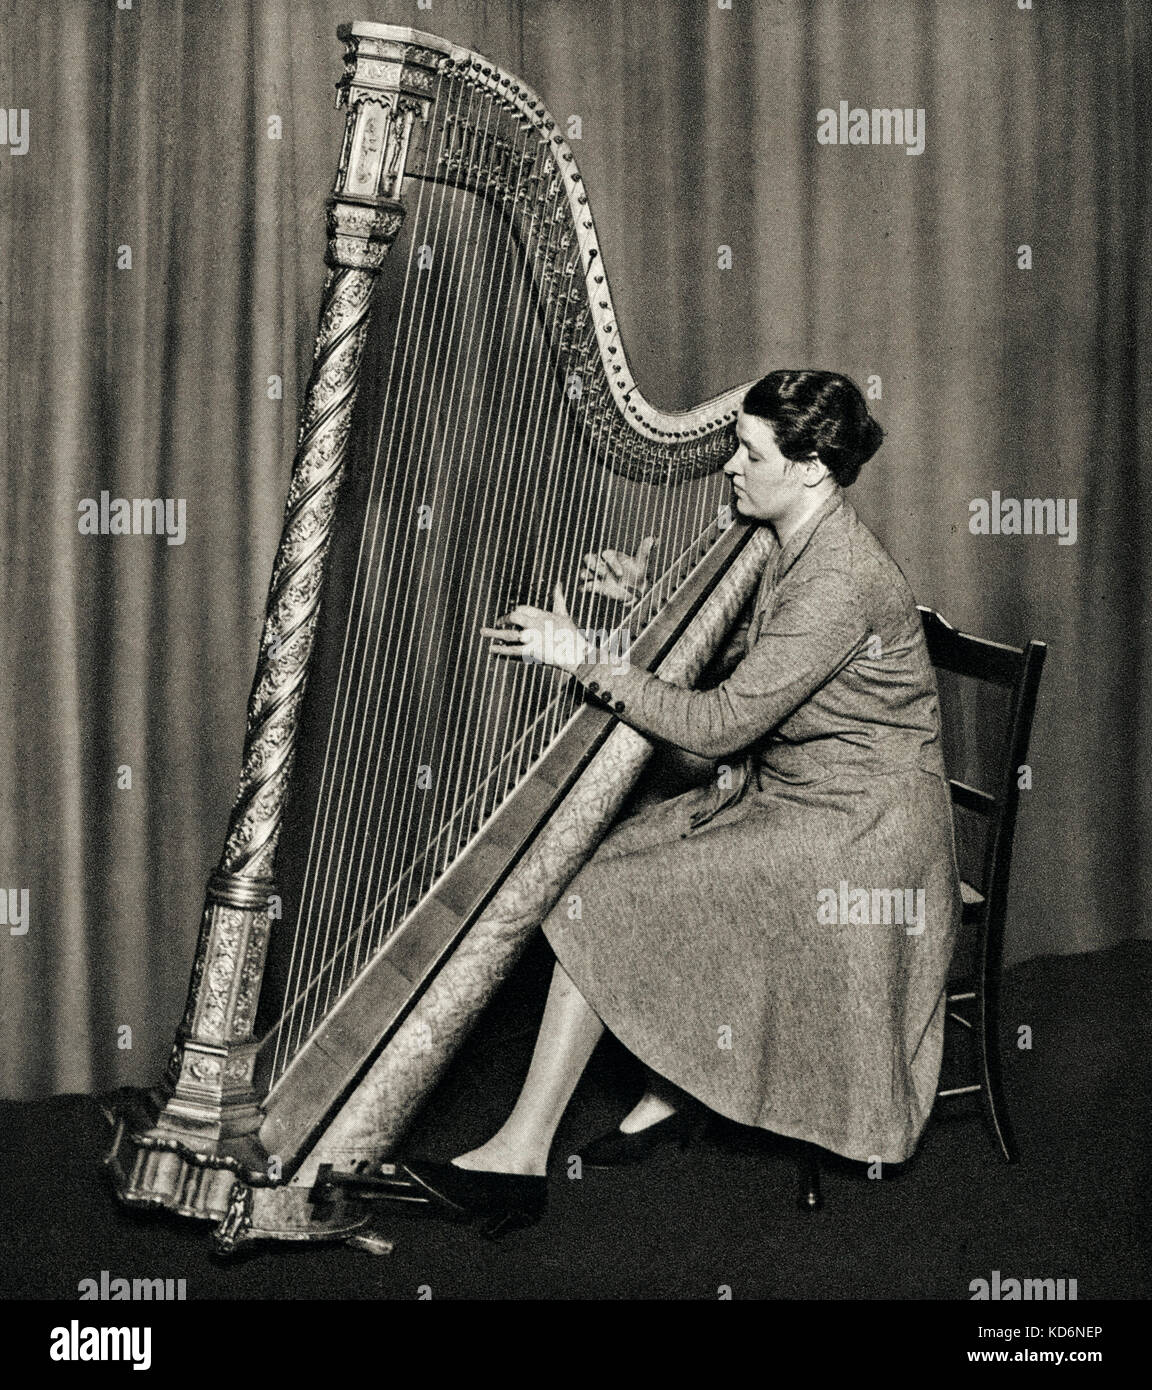 Sidonie Goossens spielen der Harfe in den späten 1930er Jahren. 1899 - Dezember 2004. Als fünftes Kind von berühmten musikalischen Familie. Harfenspieler Stockfoto